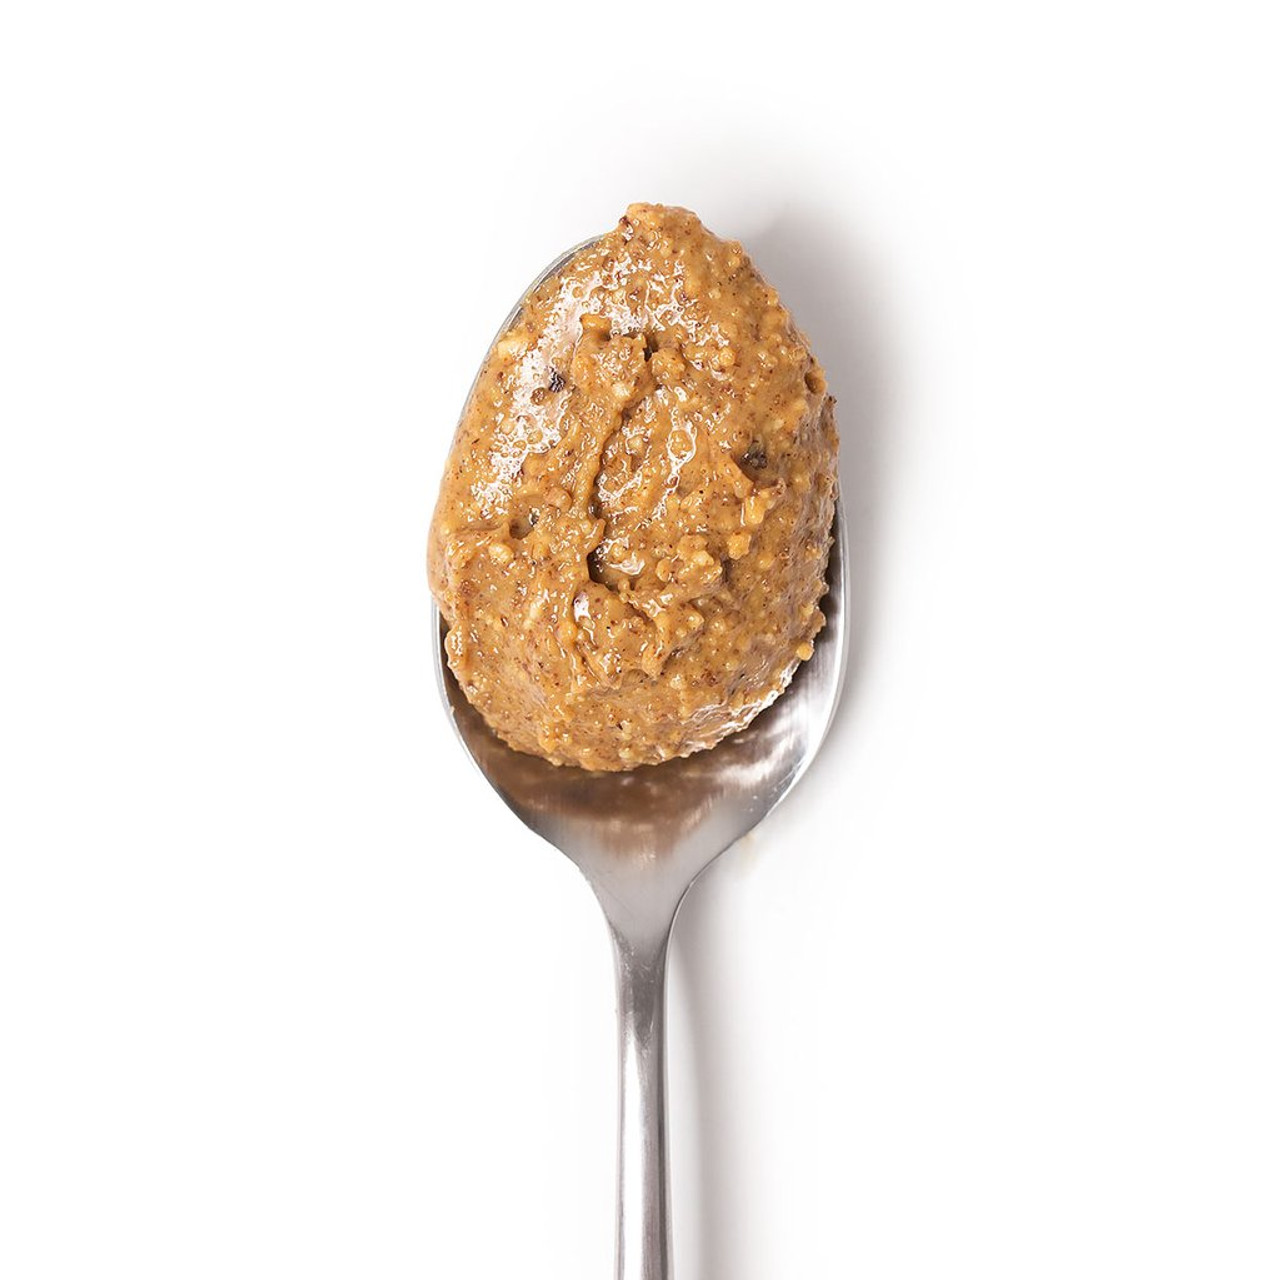 Peanut Butter Spoon